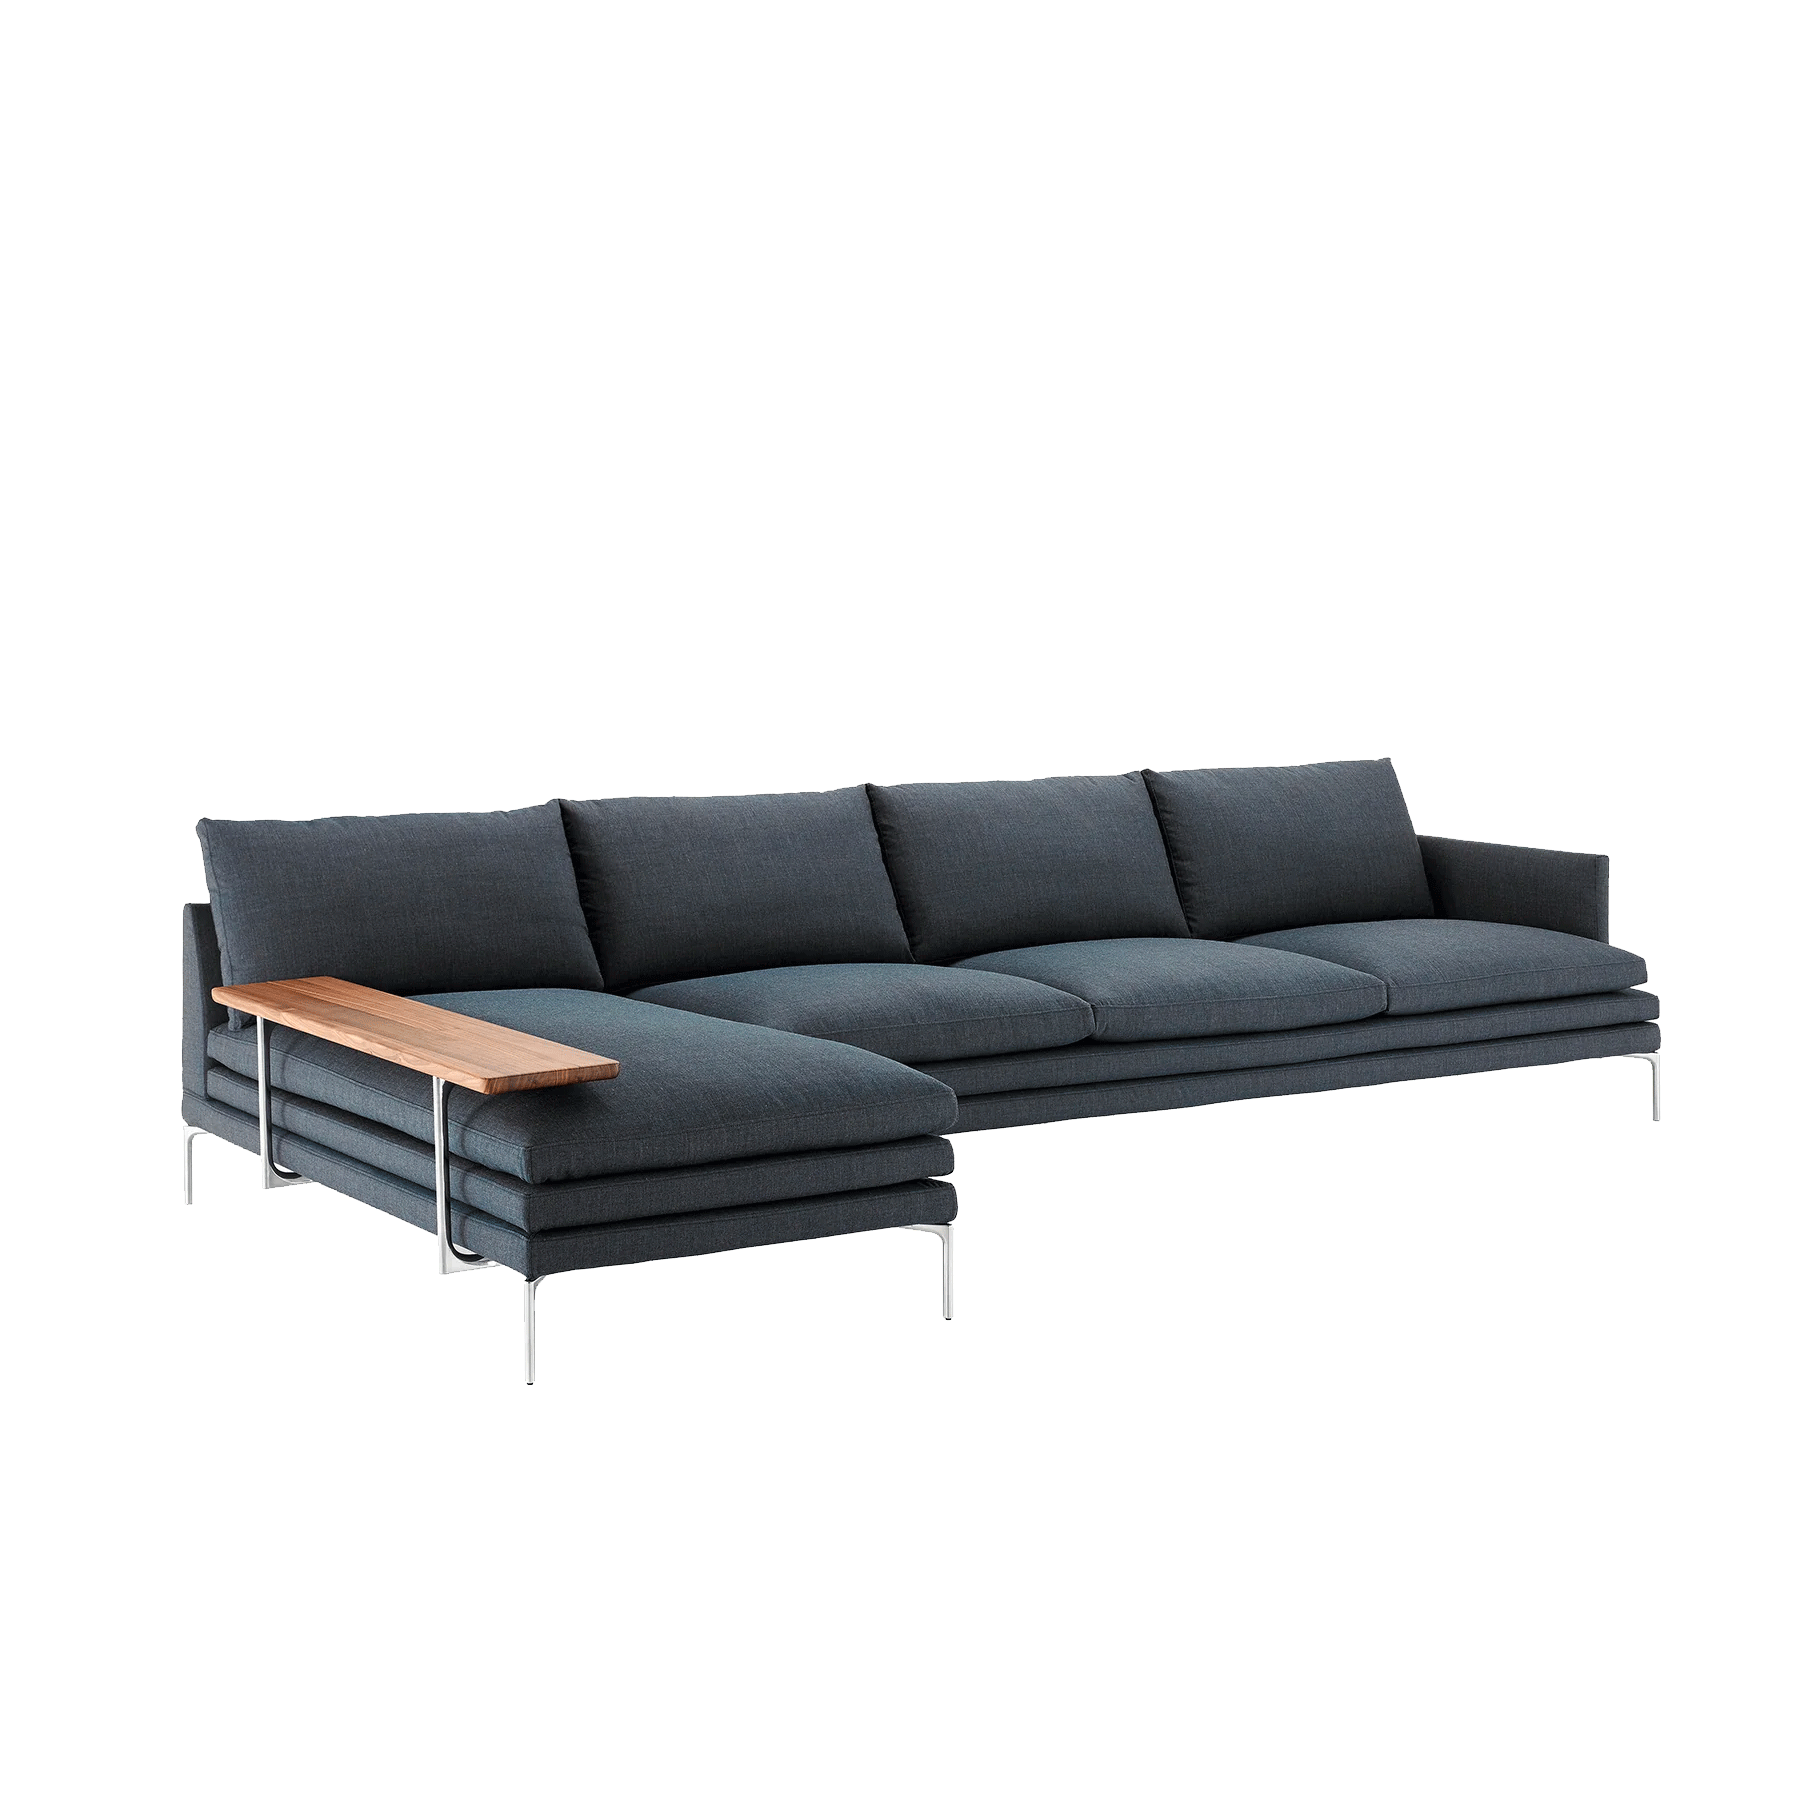 William modular sofa - Moleta Munro Limited